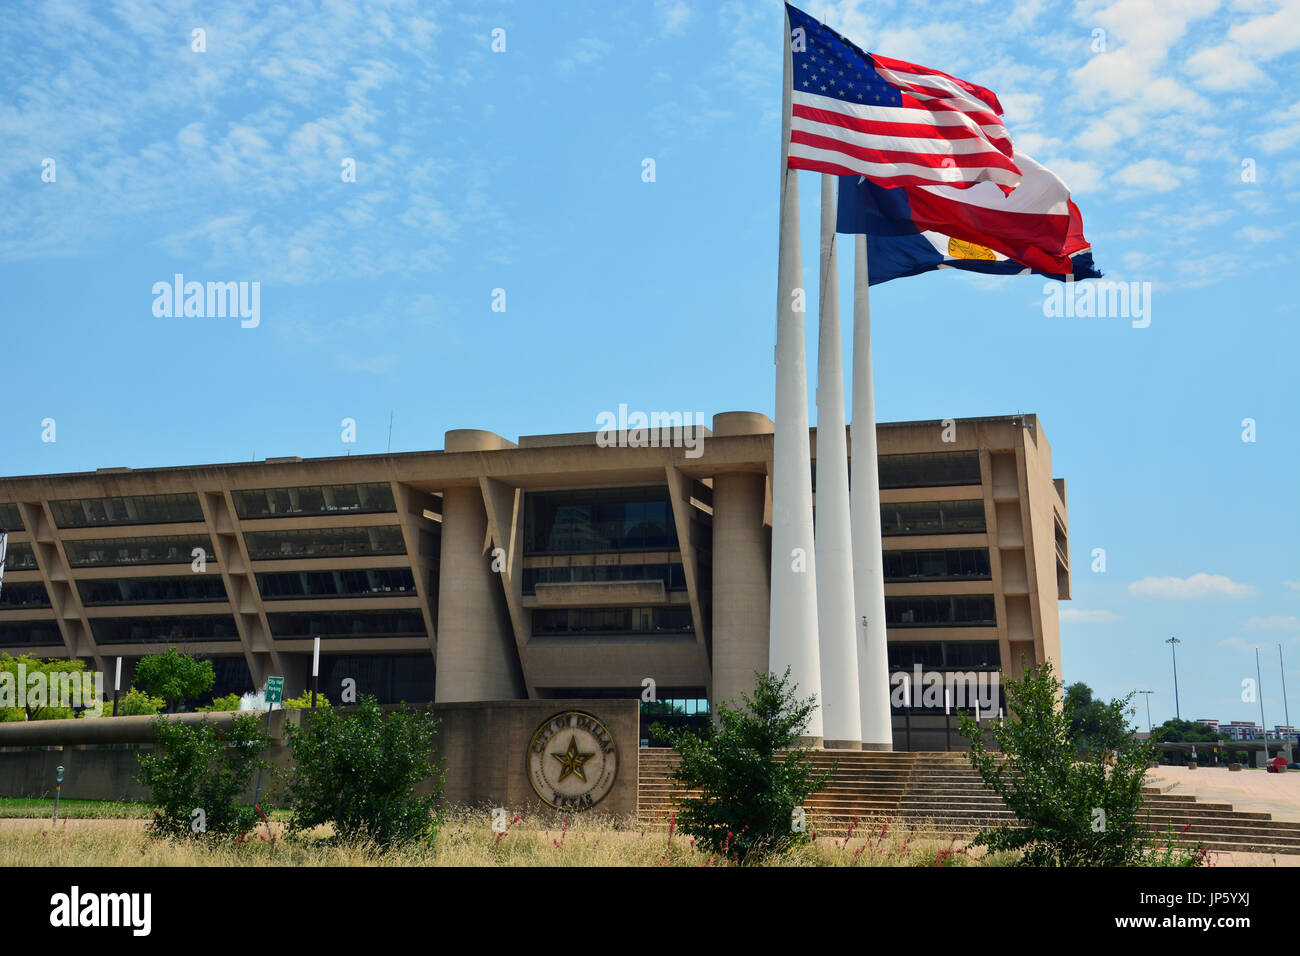 La Americana, Texas y la Ciudad de Dallas banderas sople el viento fuera de la zona de Dallas City Hall diseñado por I.M. Pei. Foto de stock